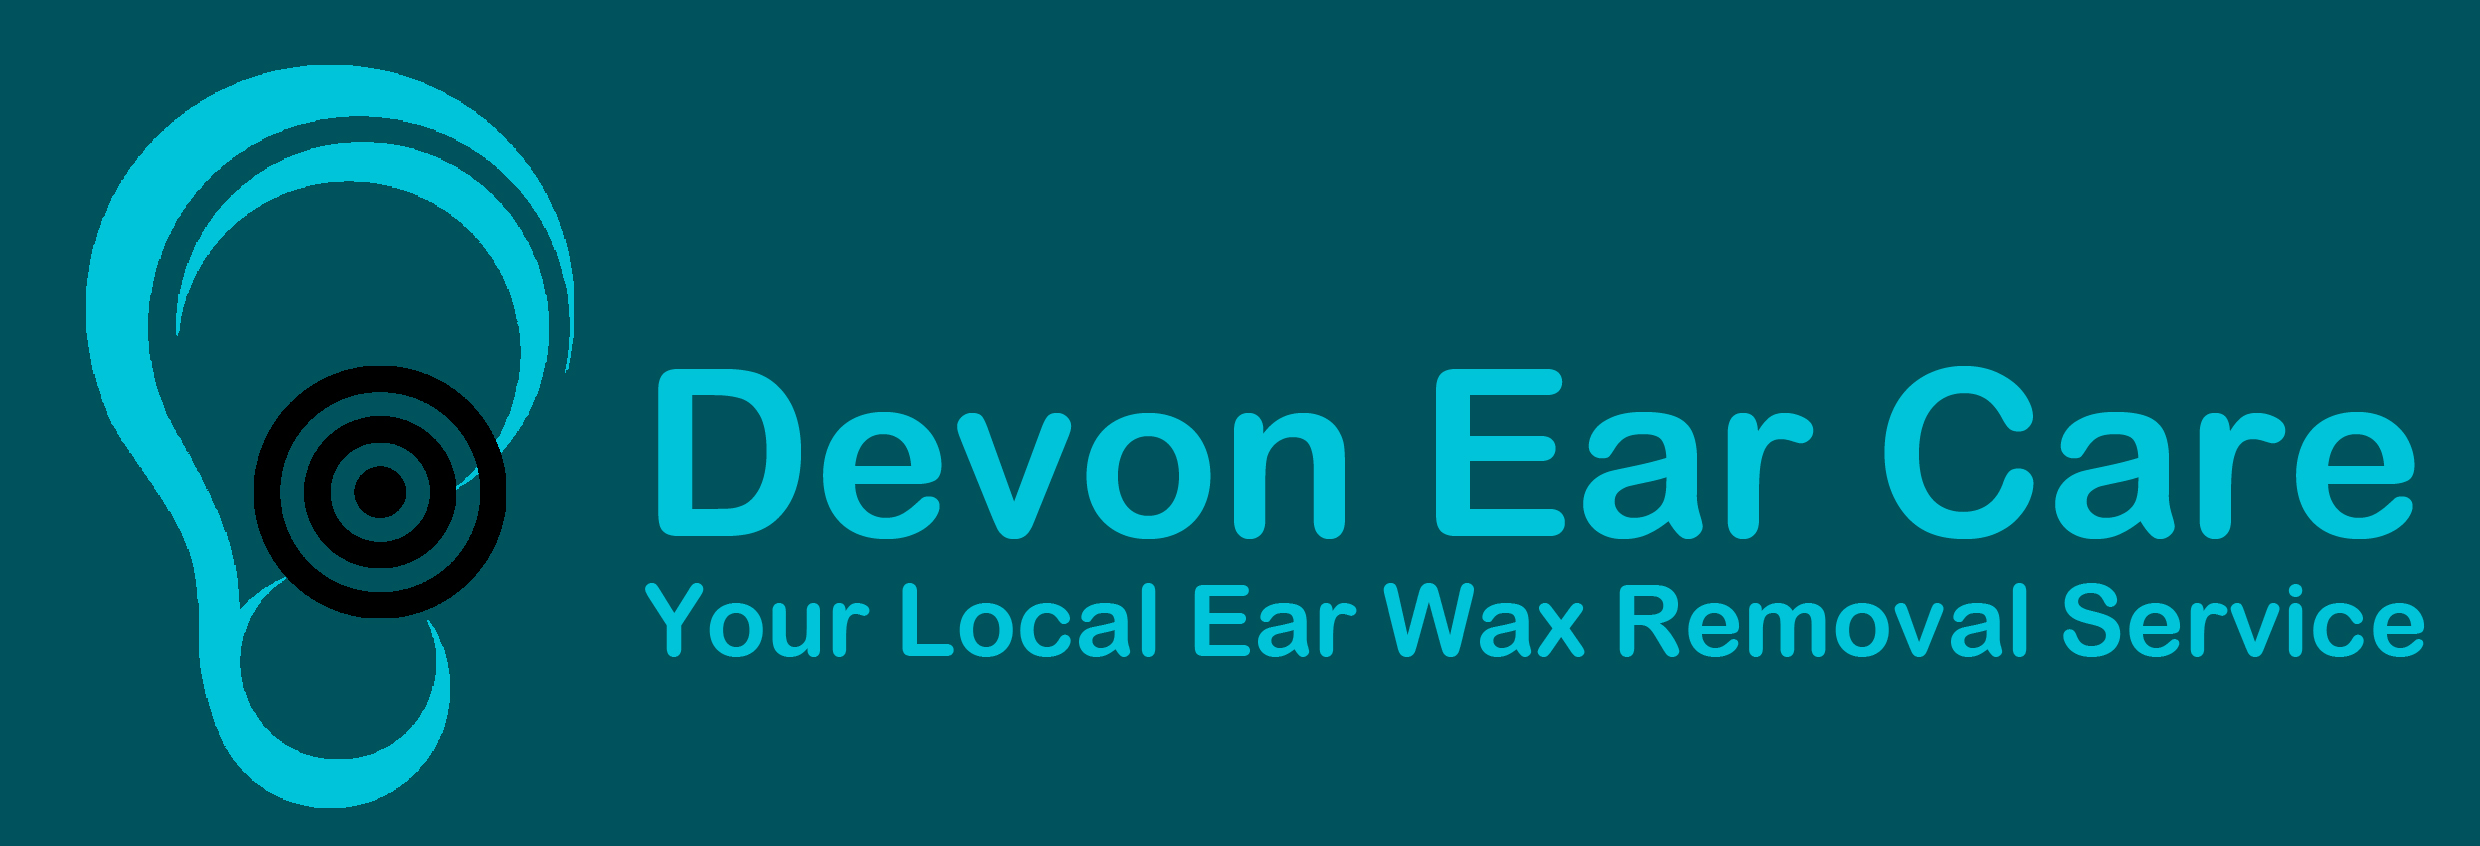 Devon Ear Care